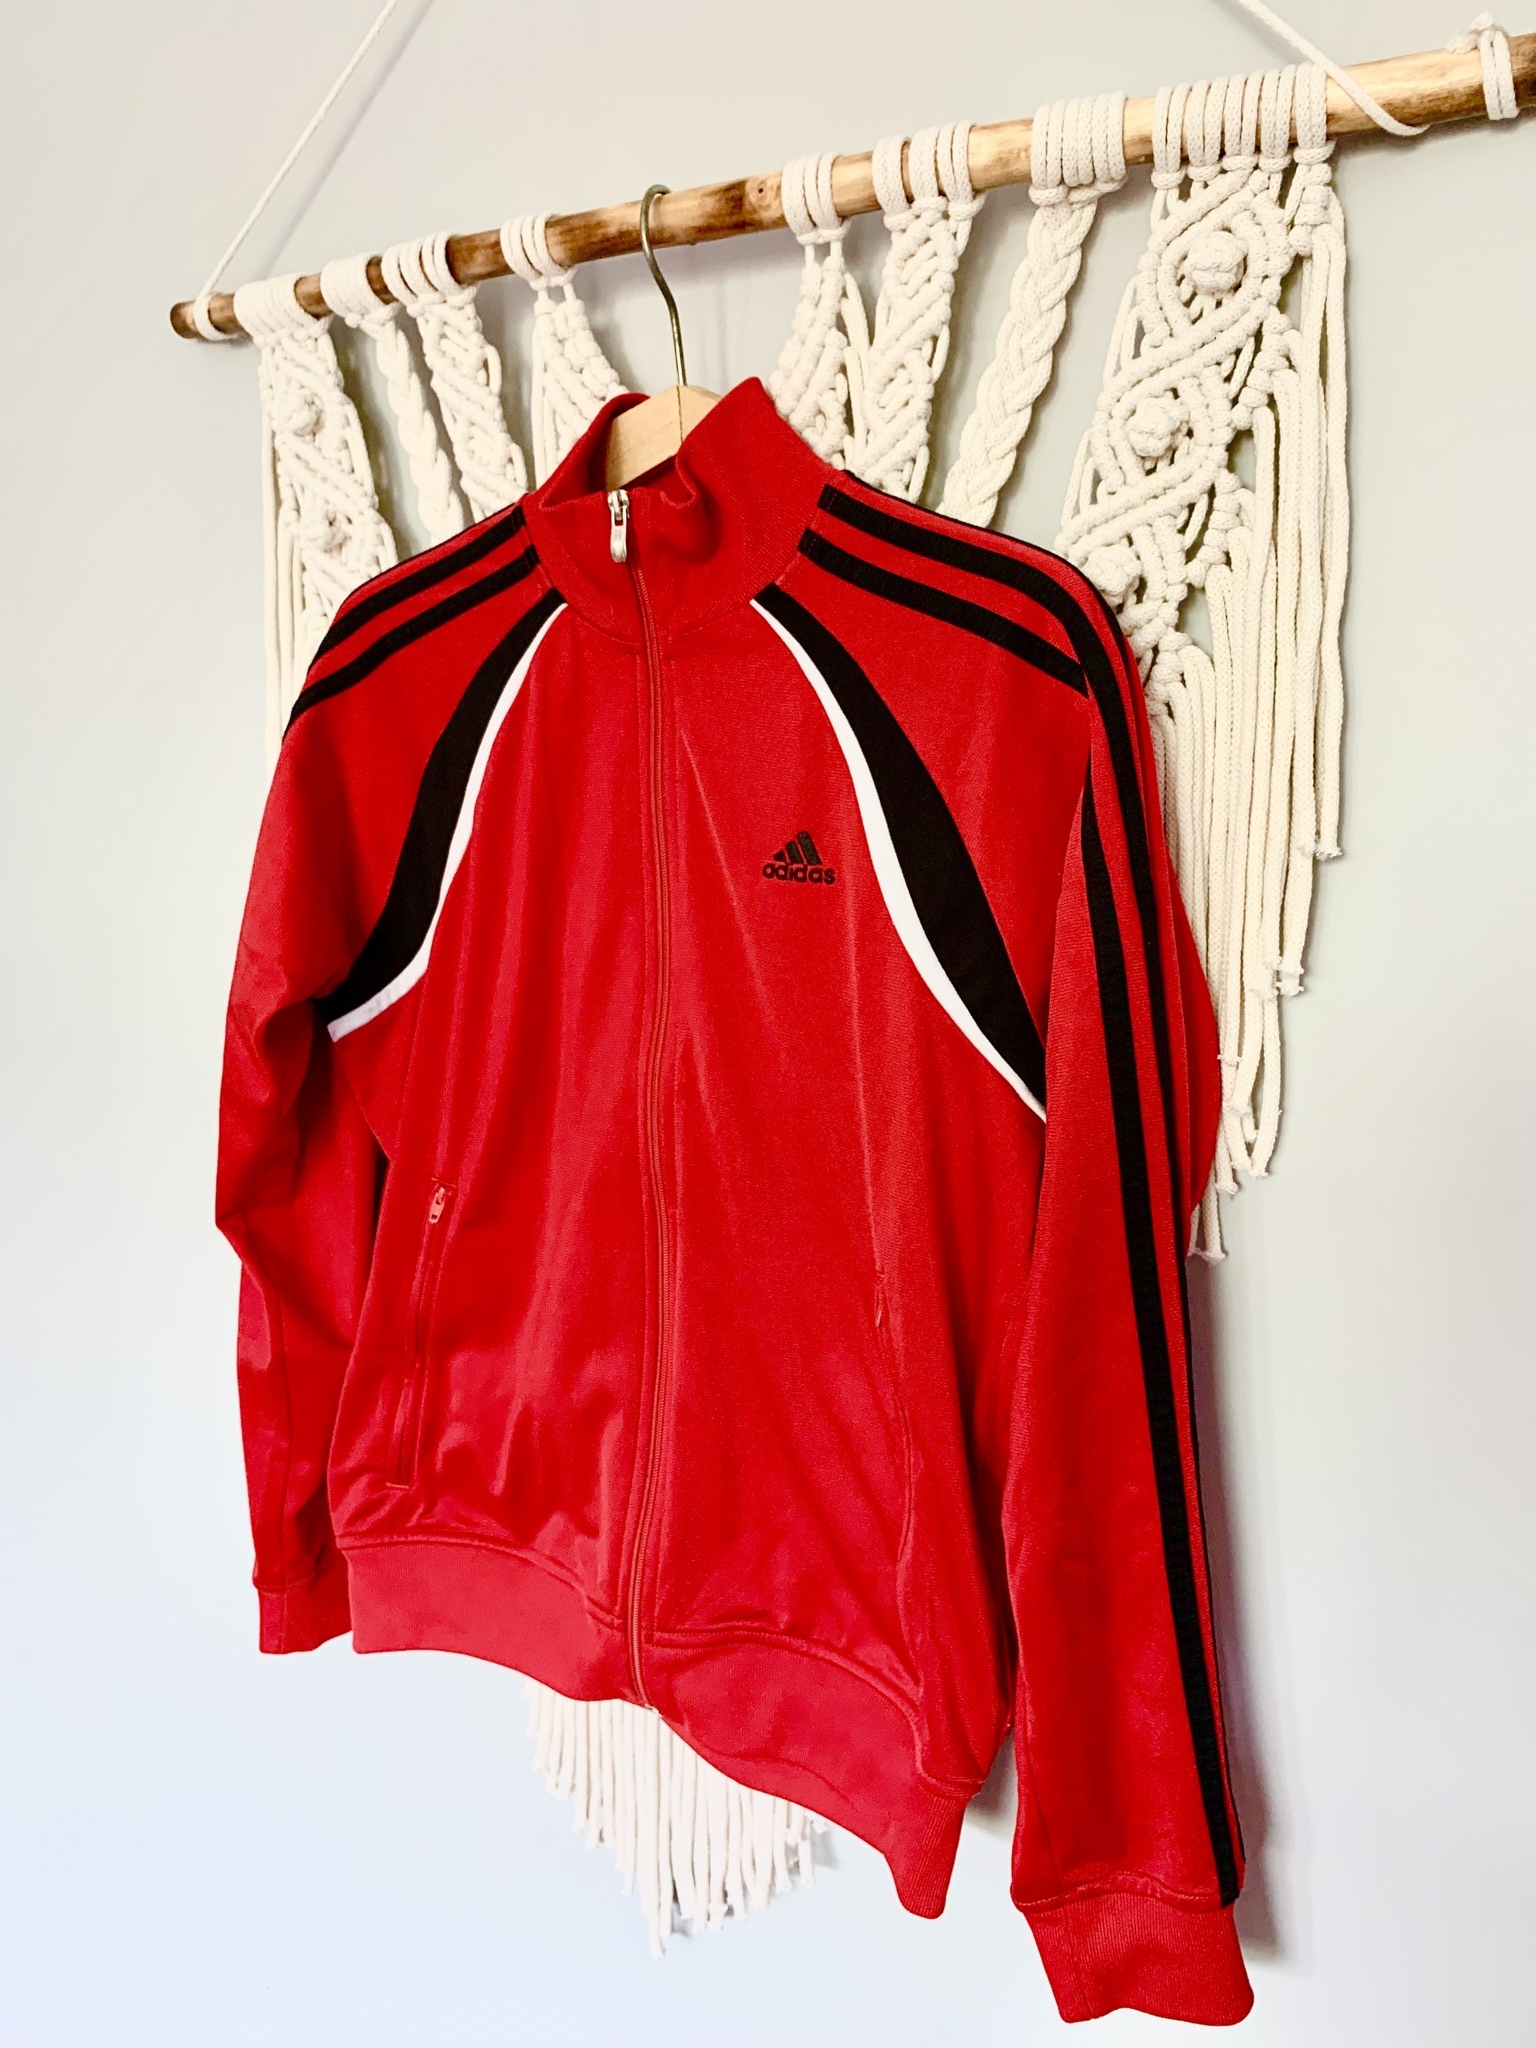 Absorberen motto twist Adidas S 36 czerwona bomberka logo | Biała Podlaska | Kup teraz na Allegro  Lokalnie